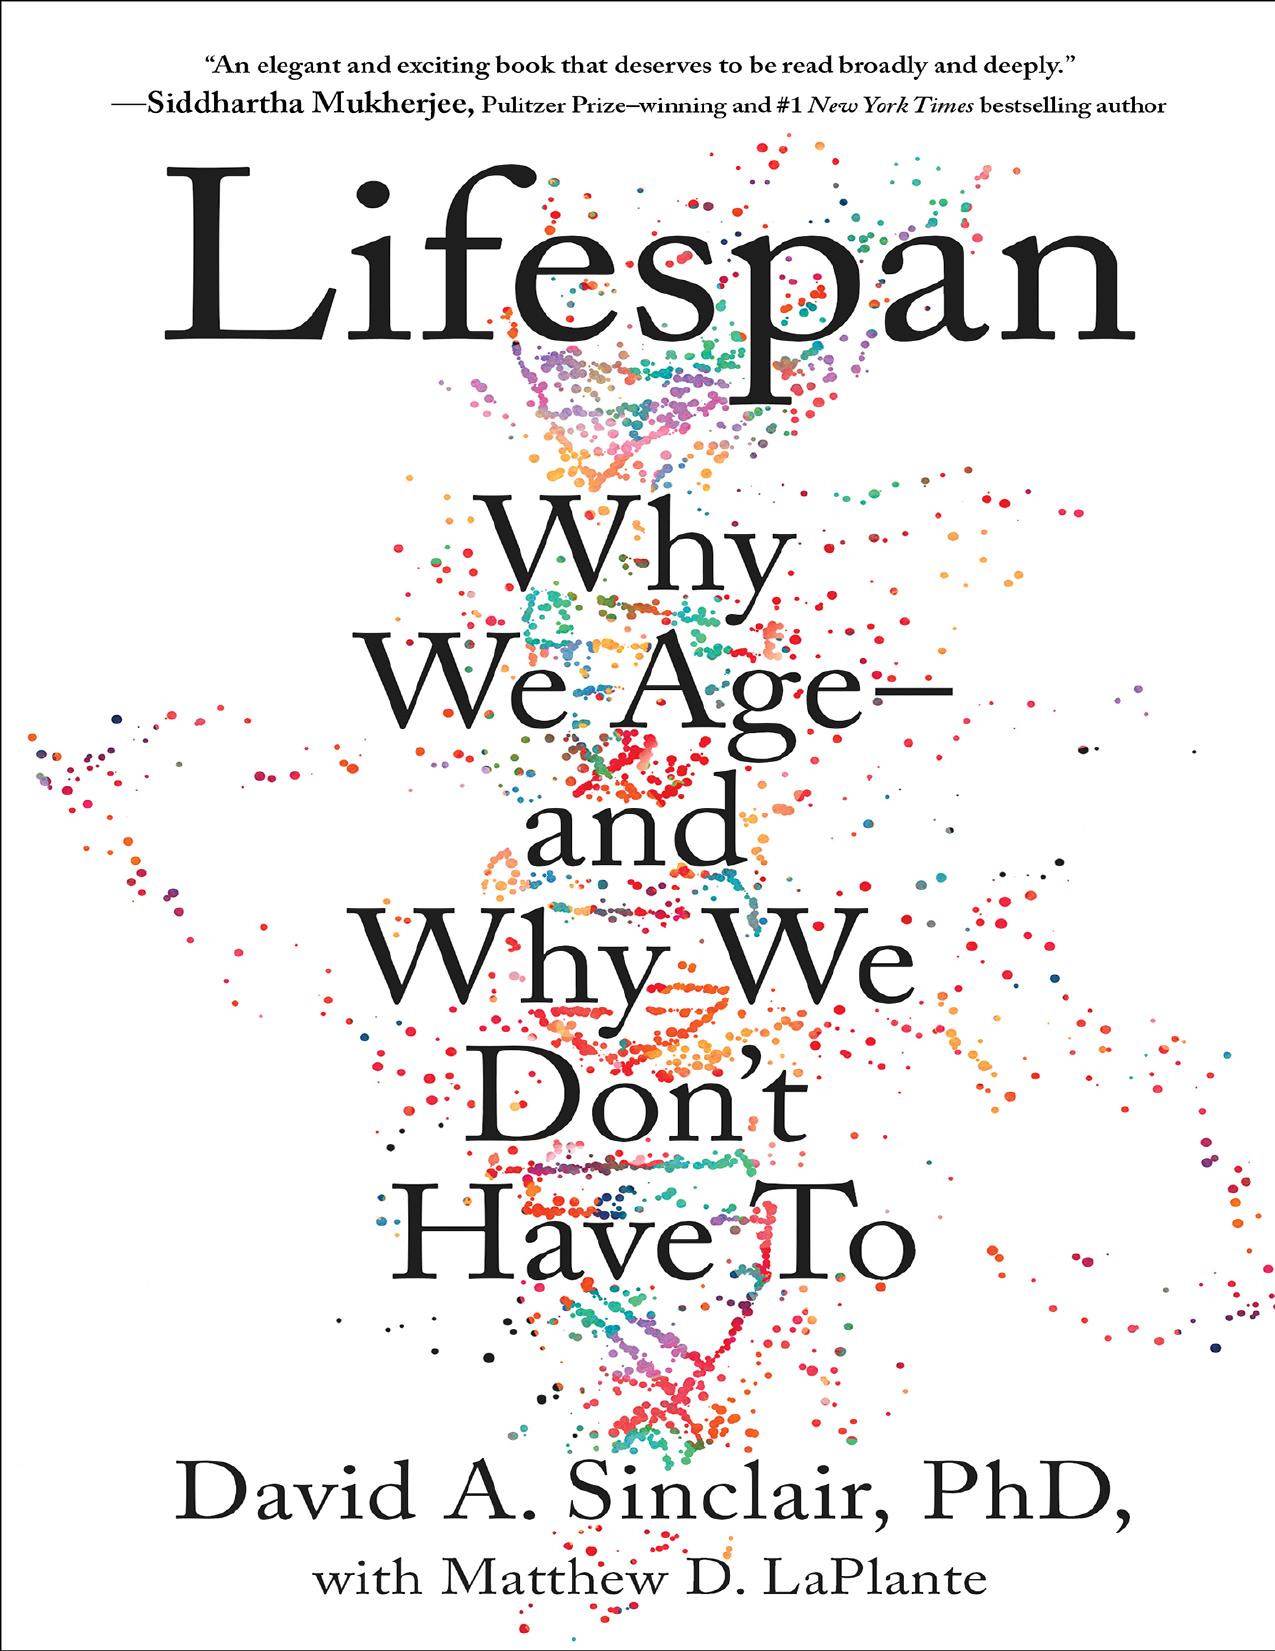 Lifespan by David A. Sinclair & Matthew D. LaPlante